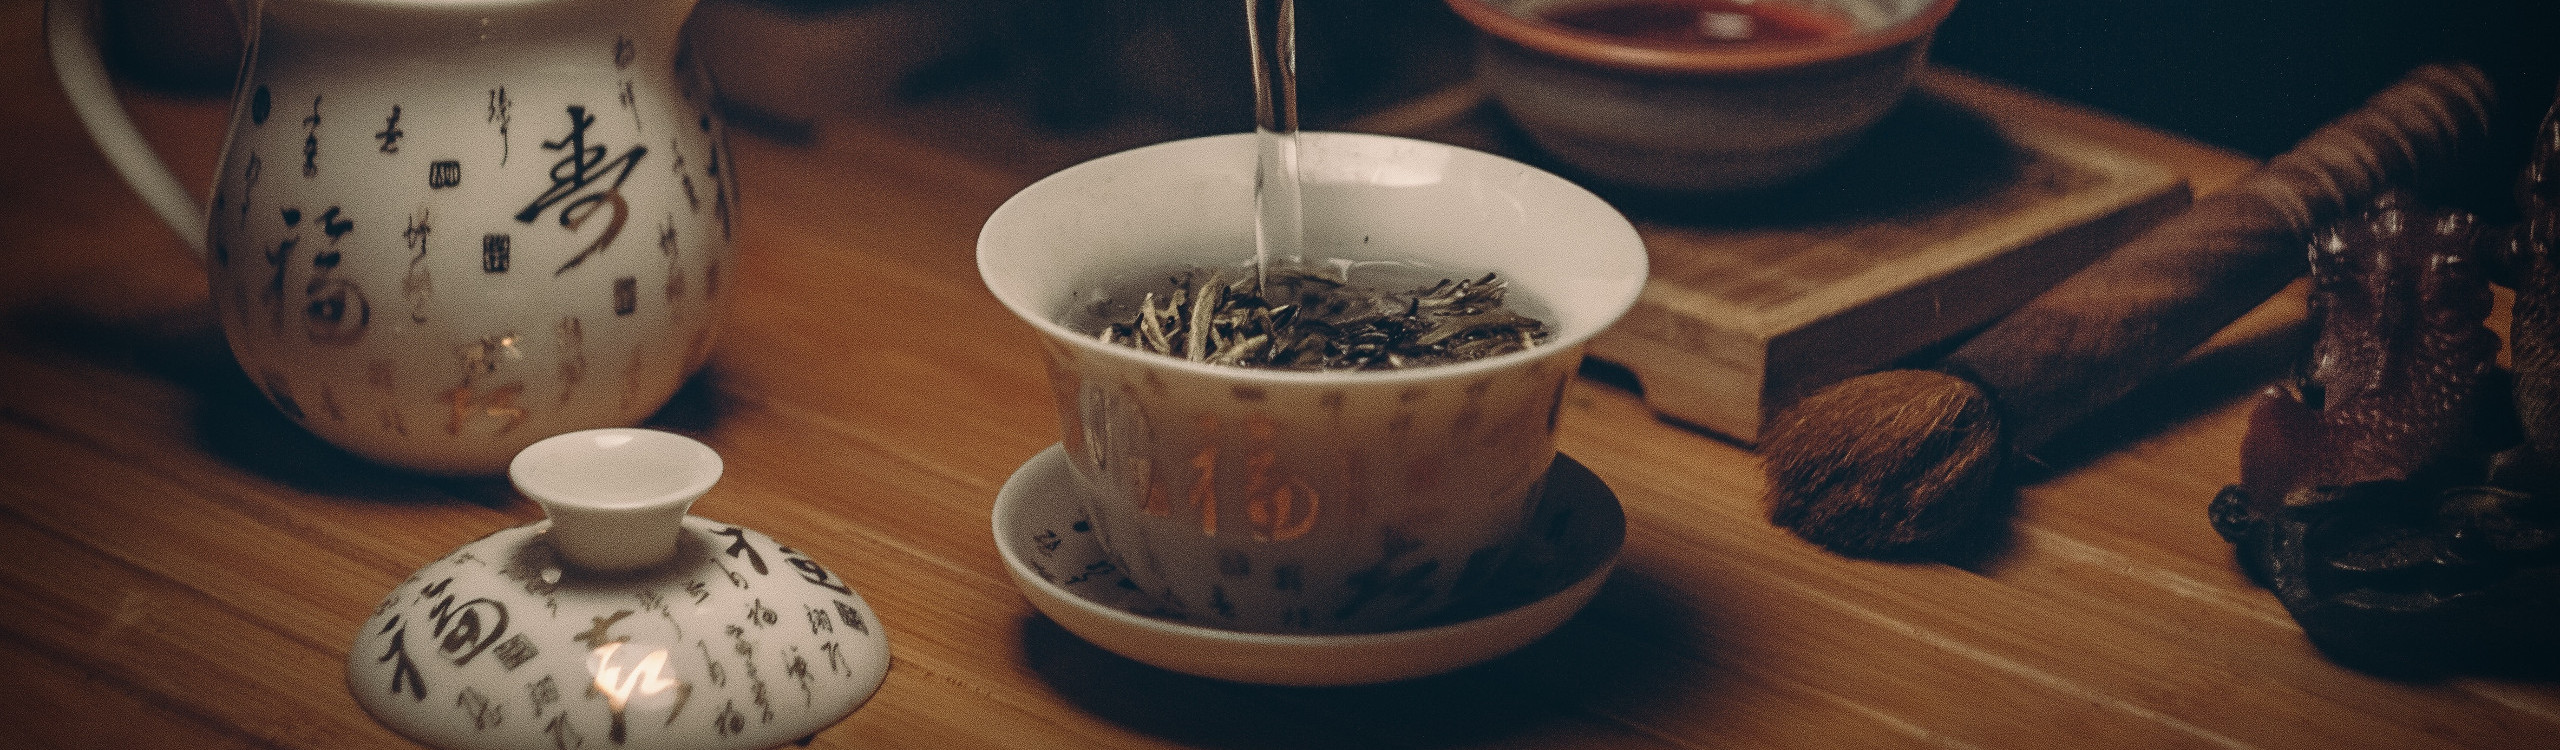 Eau chaude versée dans une tasse de thé